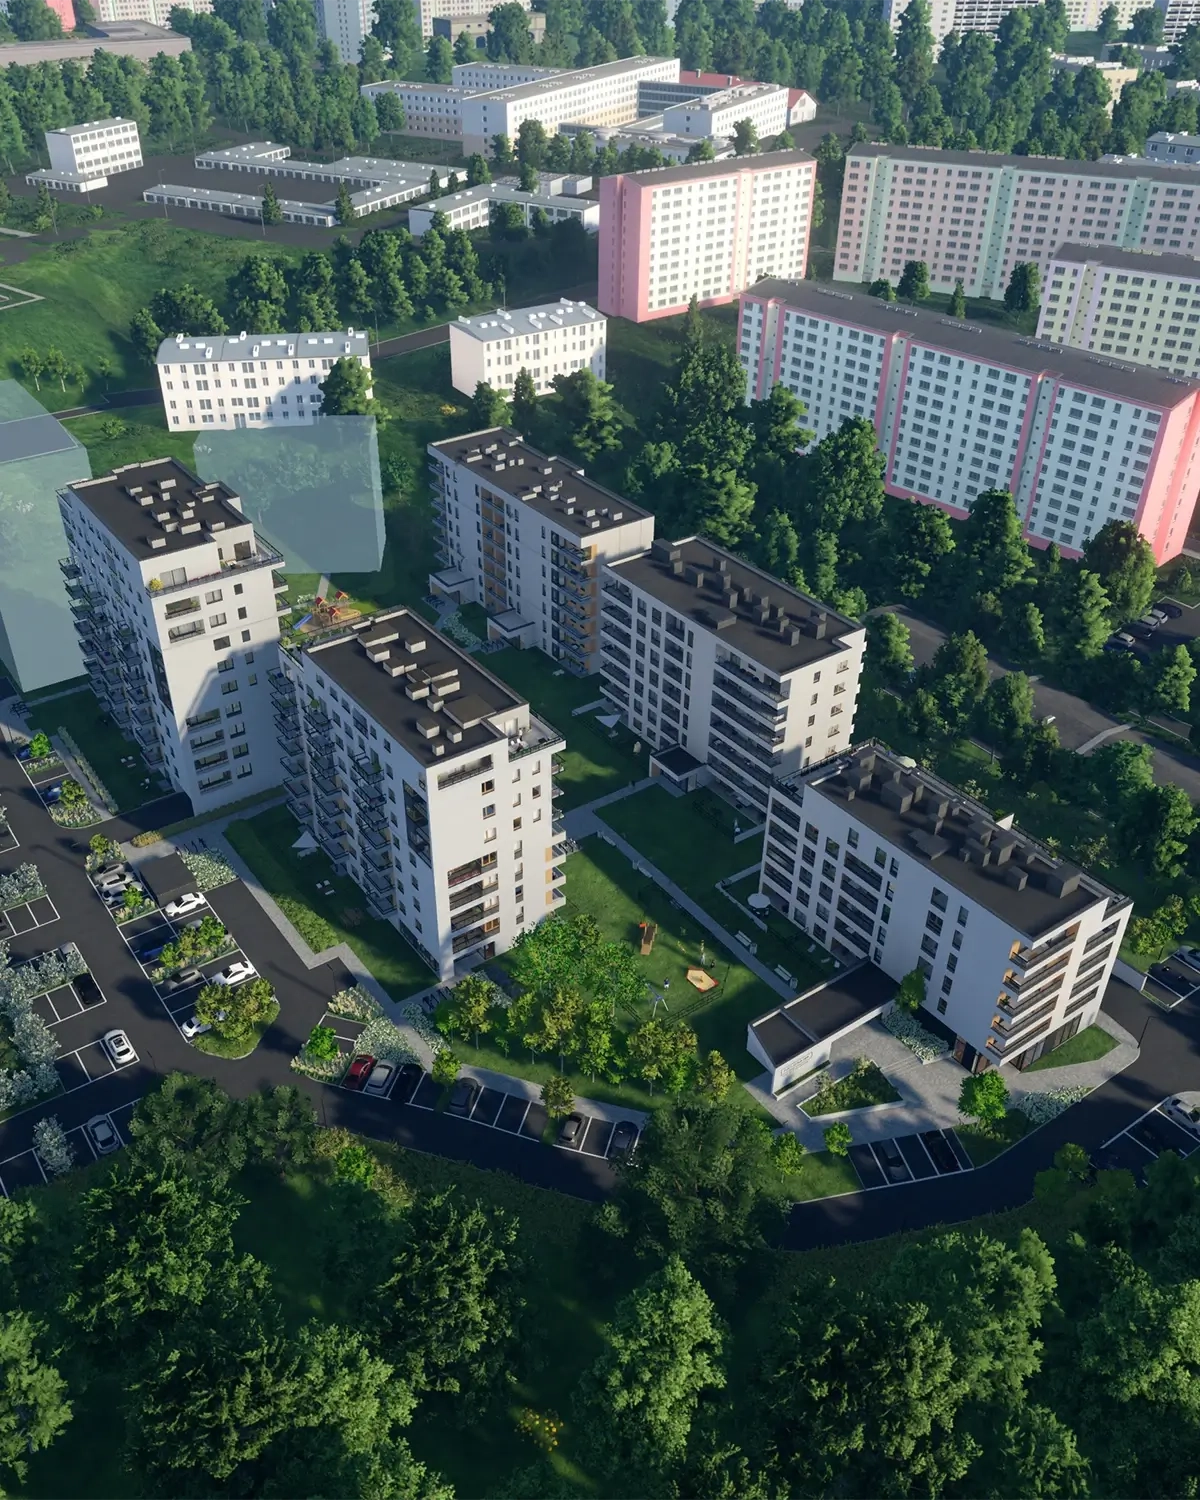 Inwestycja Panorama w Olsztynie - mieszkania na sprzedaż od dewelopera Budlex